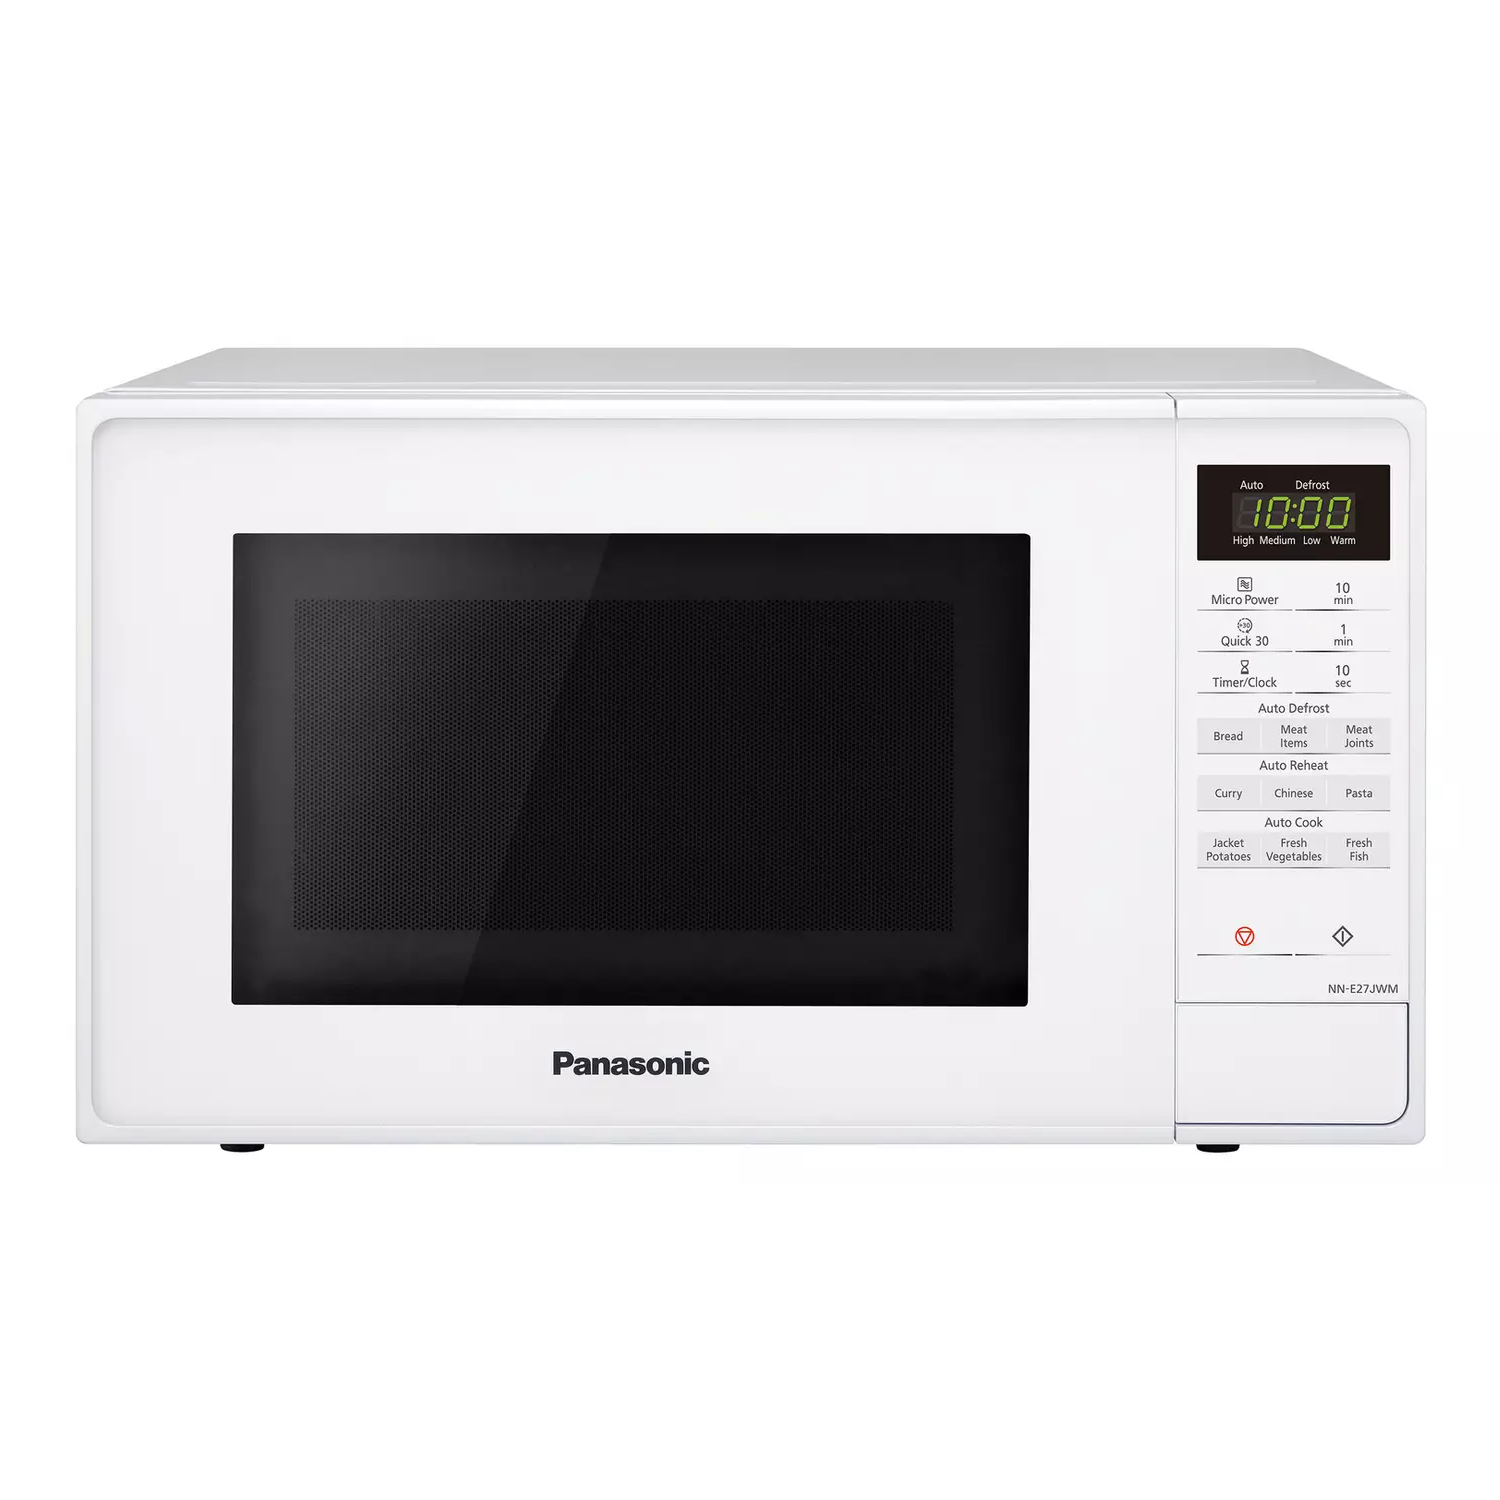 Panasonic 800W Standard 20L Microwave NN-E27JWMBPQ - White